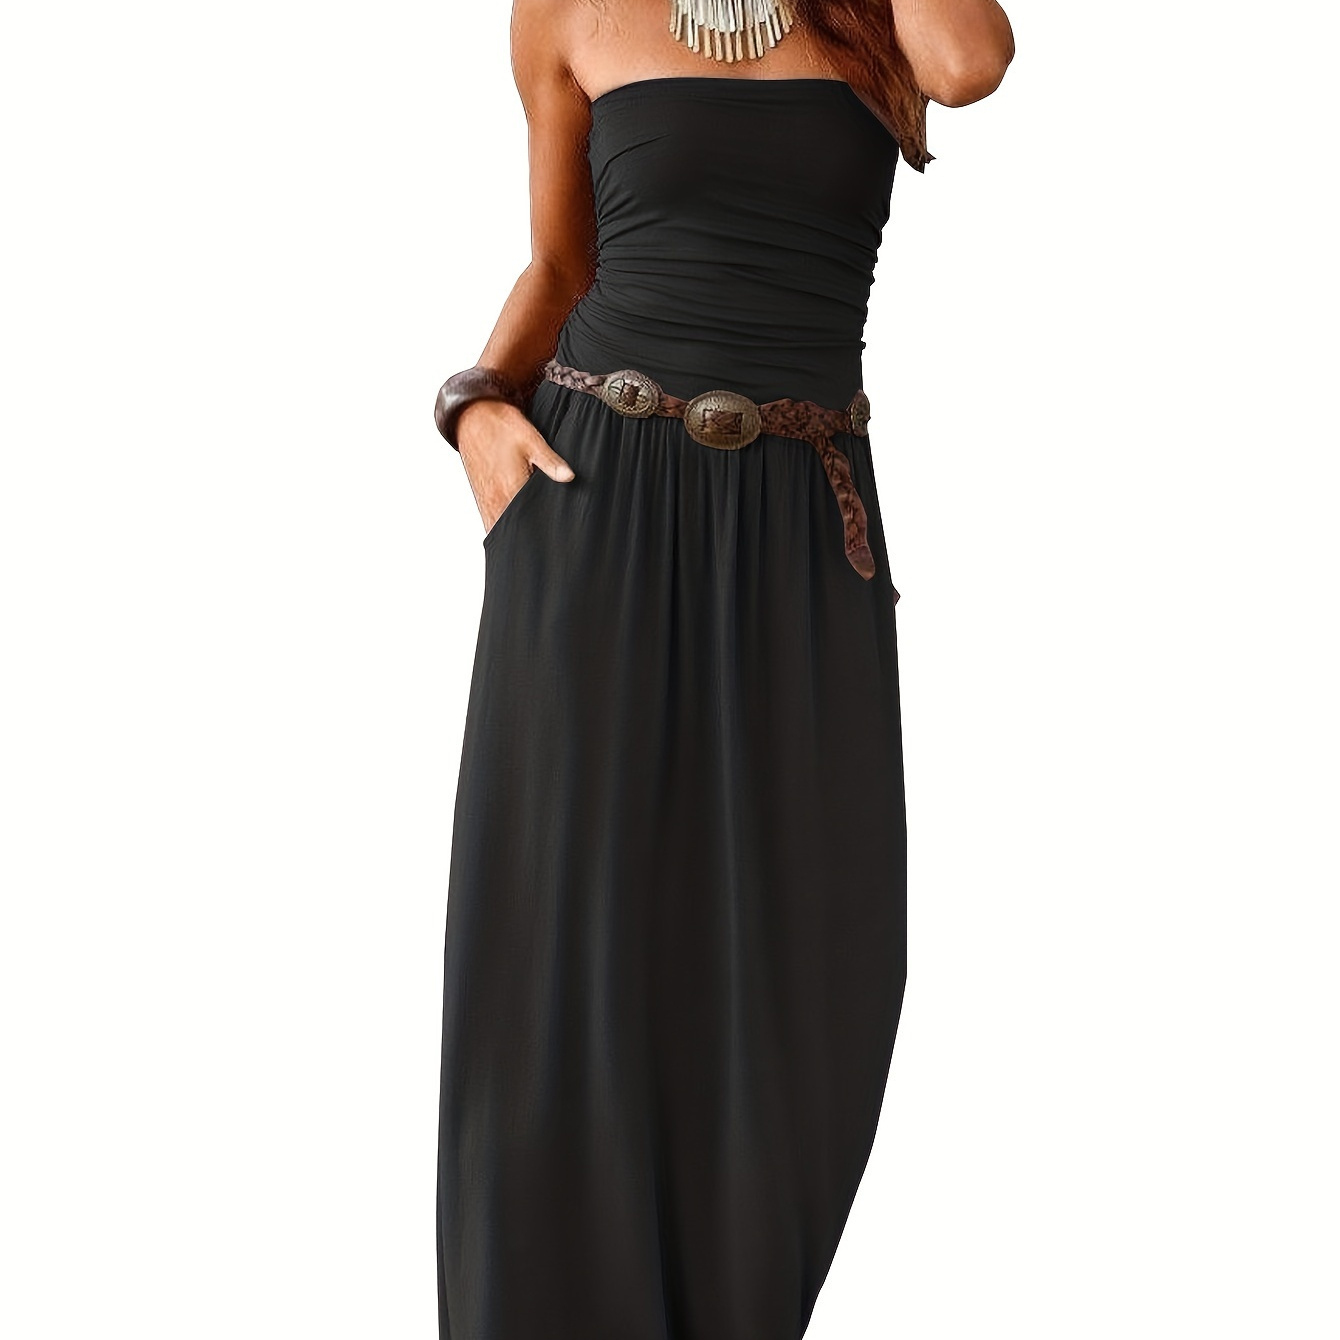 

Solid Slim Tube Dress, Versatile Strapless Pockets Ruffle Hem Dress For Spring & Summer, Women's Clothing